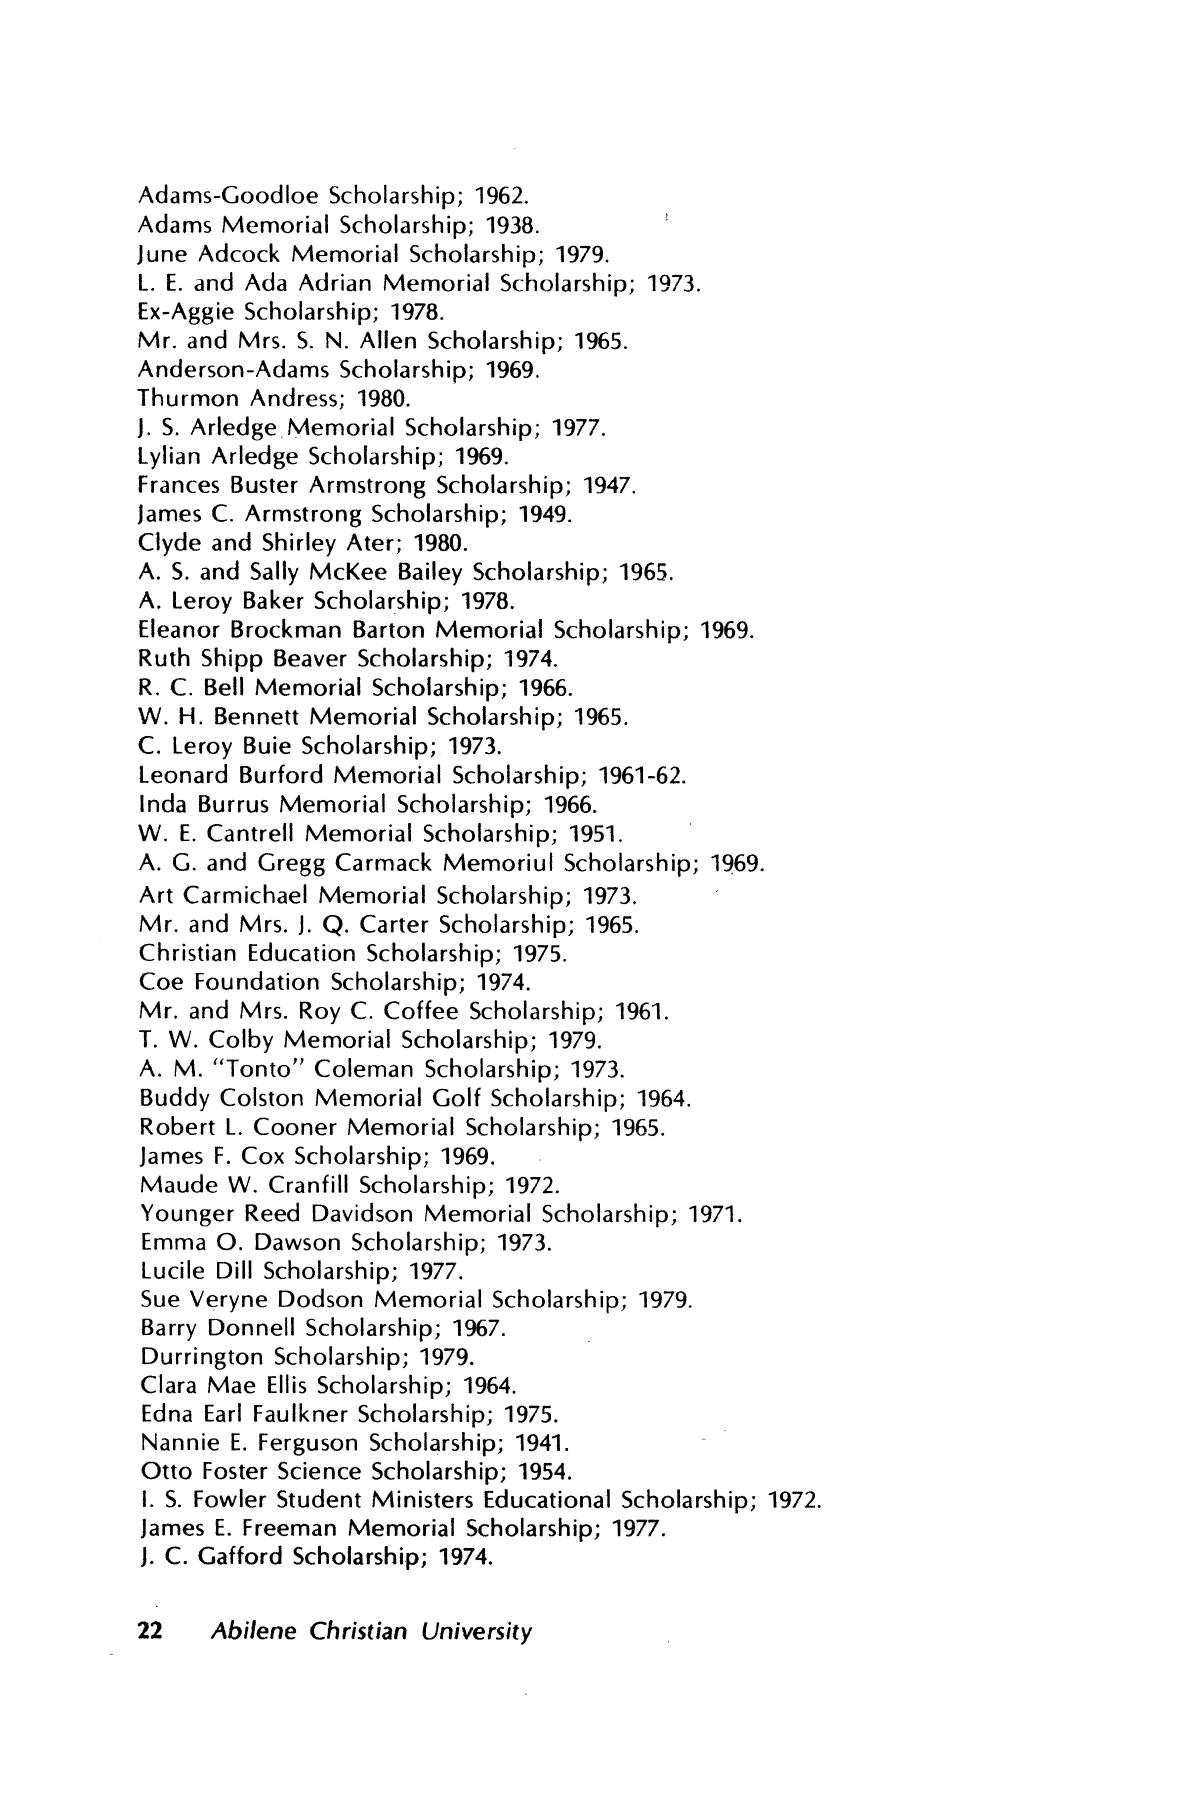 Catalog of Abilene Christian University, 1981-1982
                                                
                                                    22
                                                